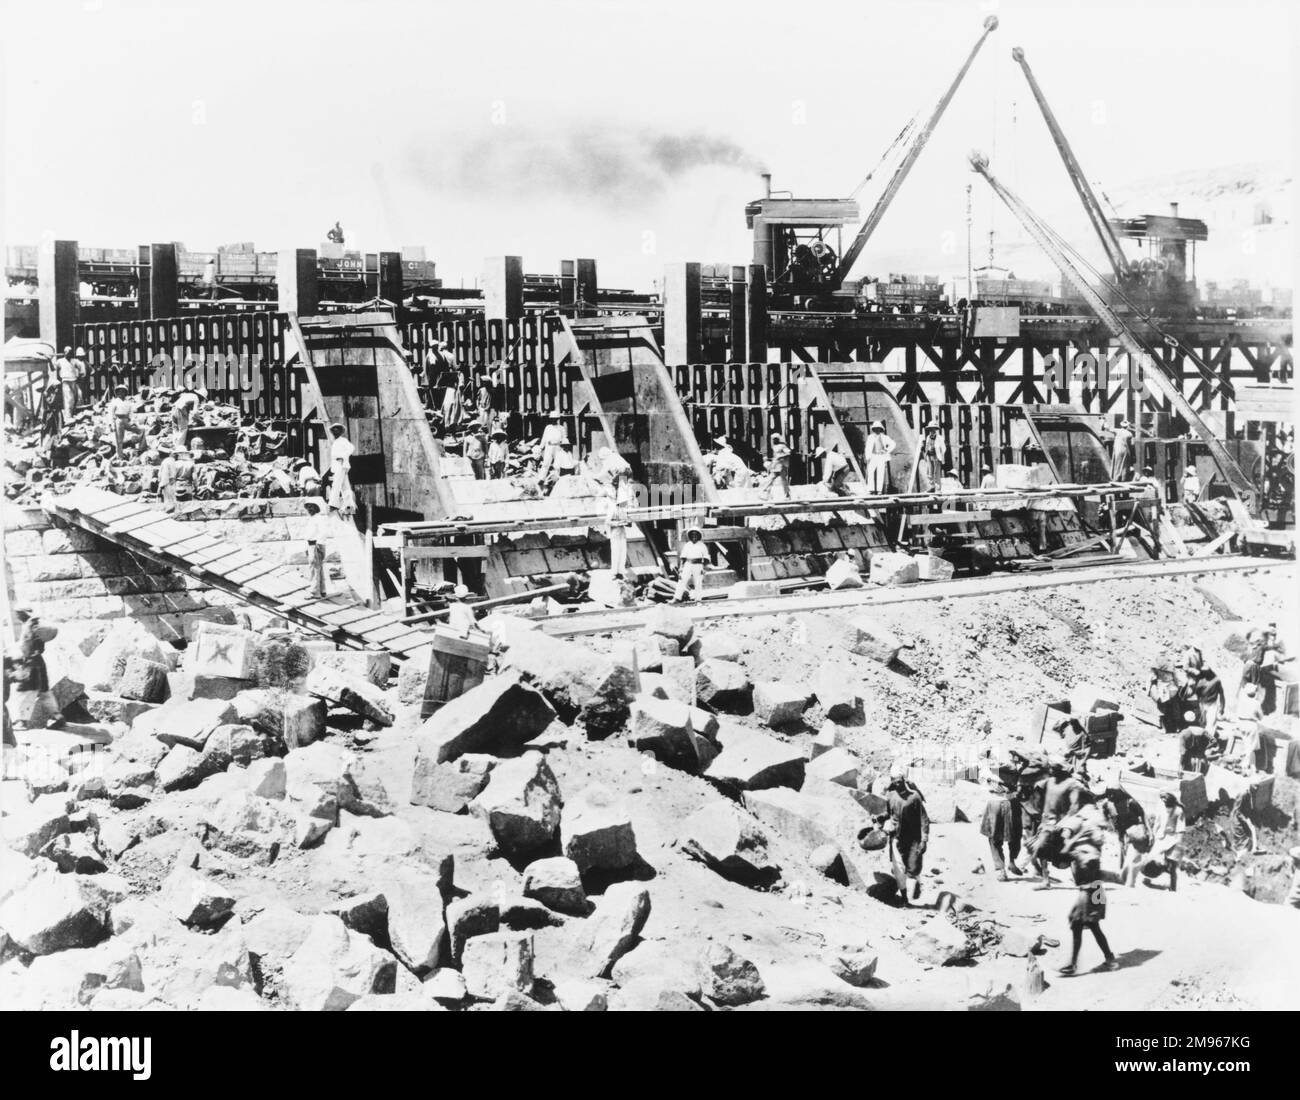 Costruzione della diga di Assuan (la vecchia o bassa diga): Fanghi fiancheggiati da ghisa. Progettato da Sir William Willcocks, gli inglesi iniziarono a costruire la diga nel 1889 e fu aperta nel dicembre 1902. Foto Stock